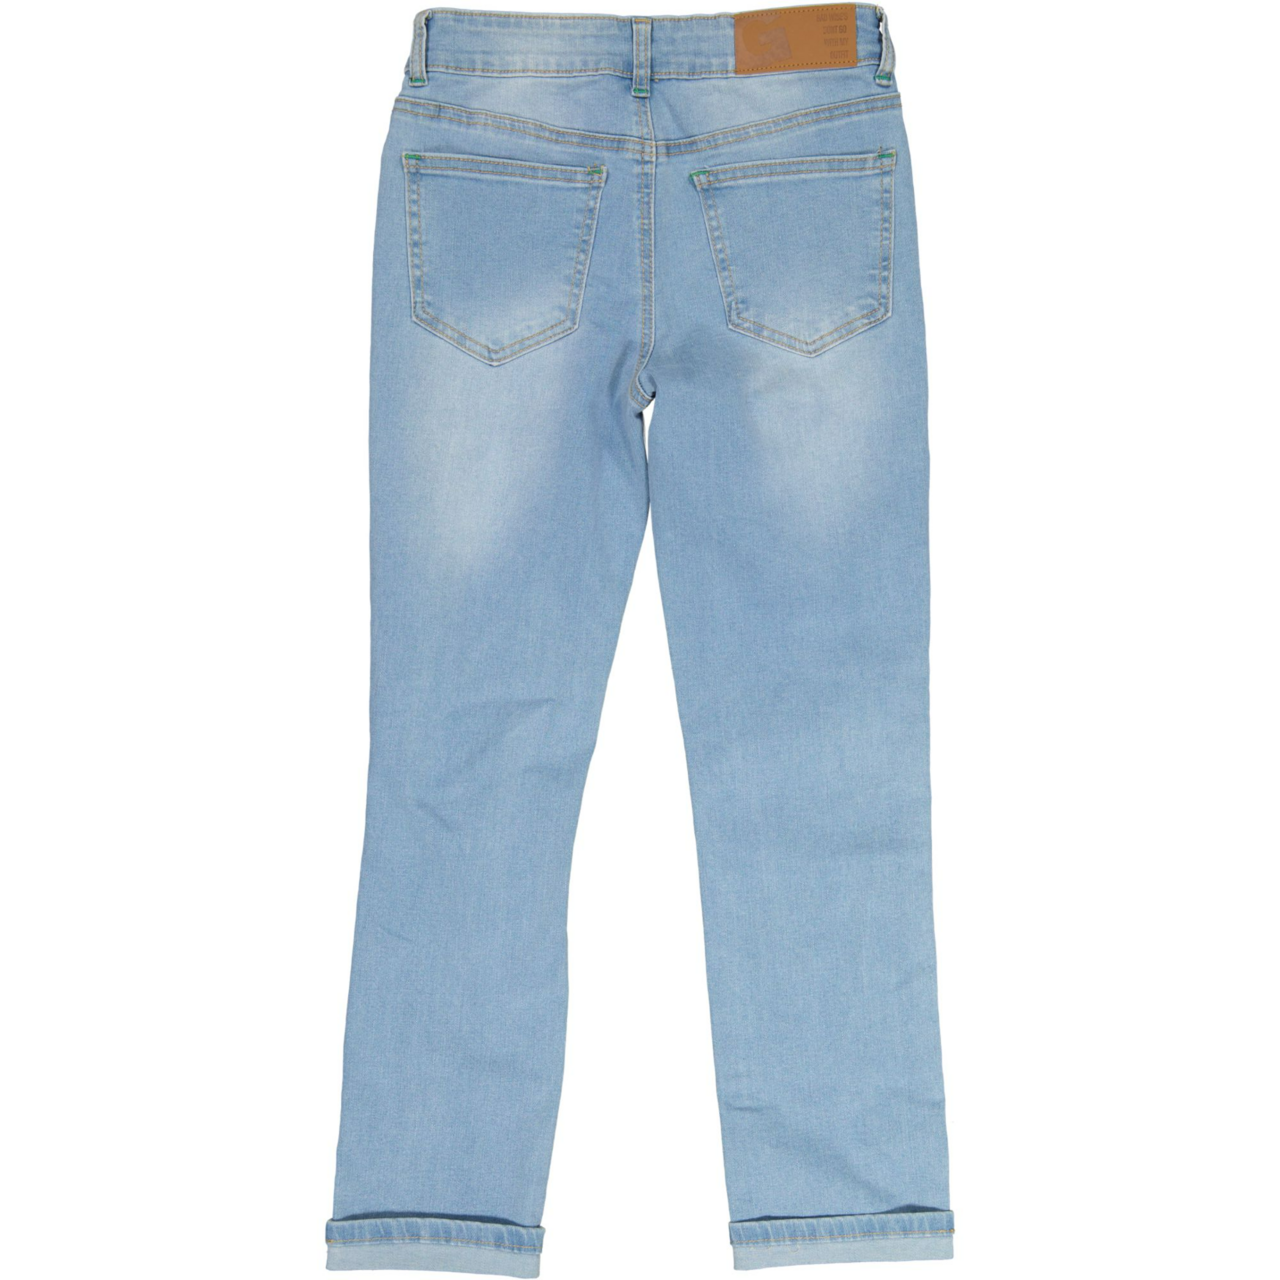 Unisex loose fit jeans Denim blue wash 110/116